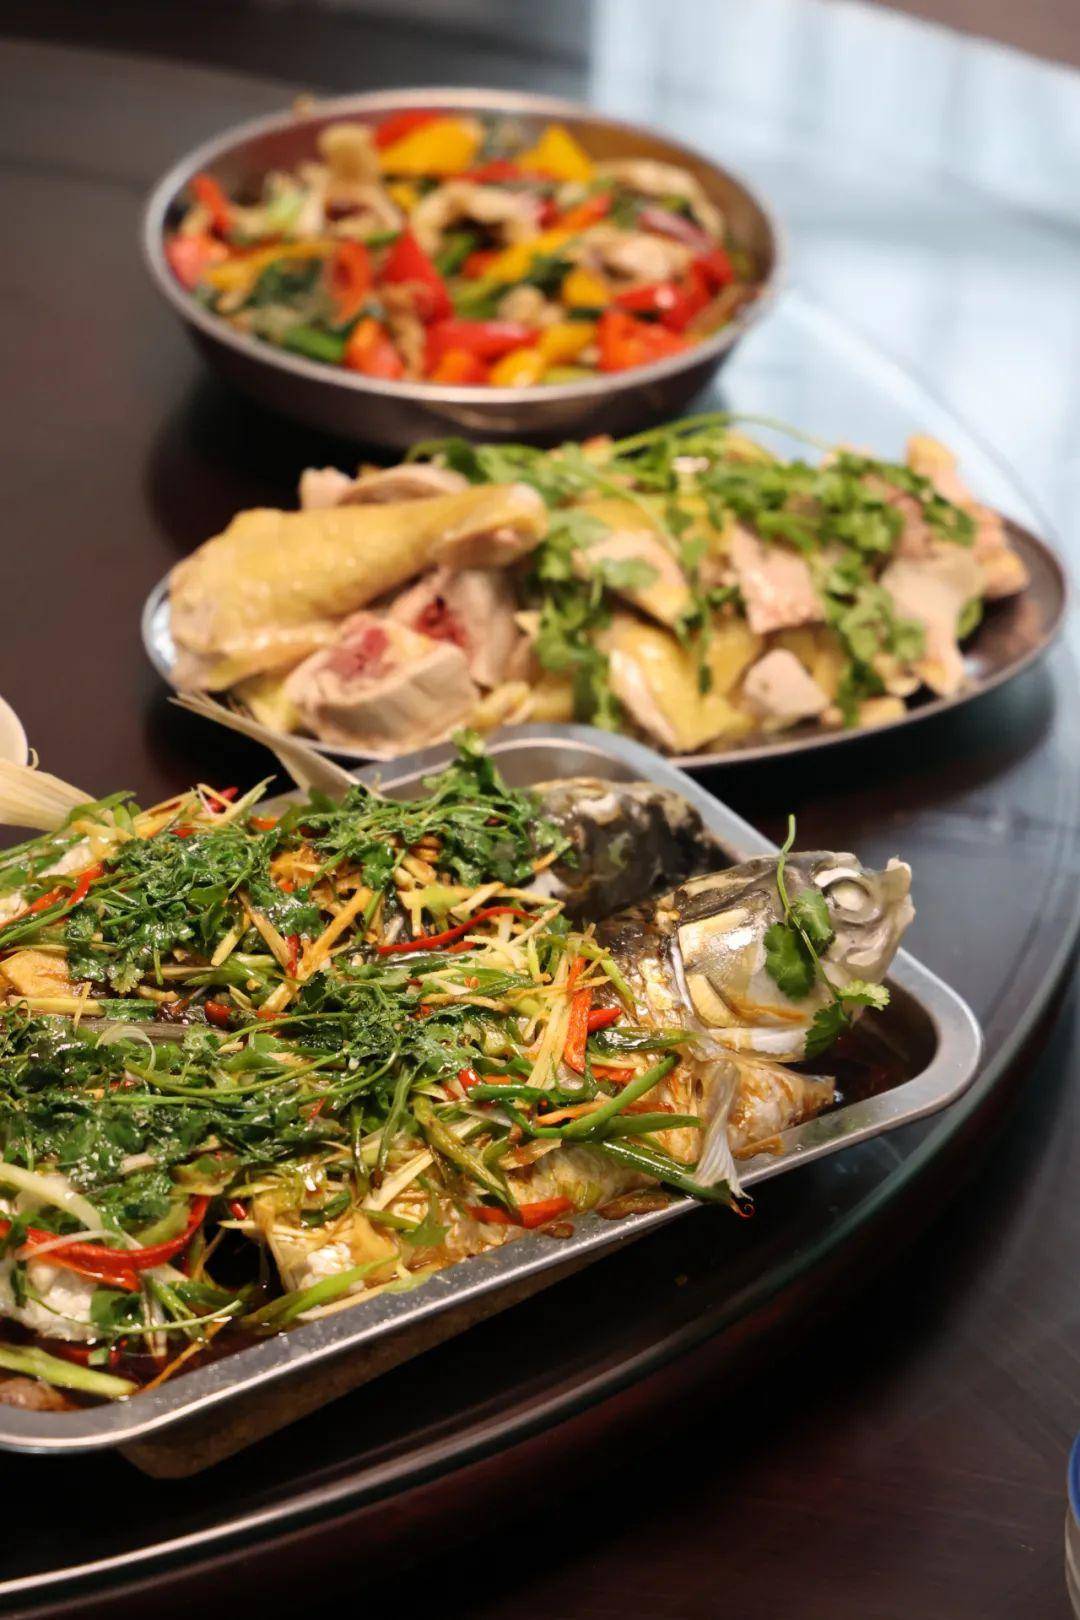 最会吃的广东人，为何痴迷不锈钢餐具？